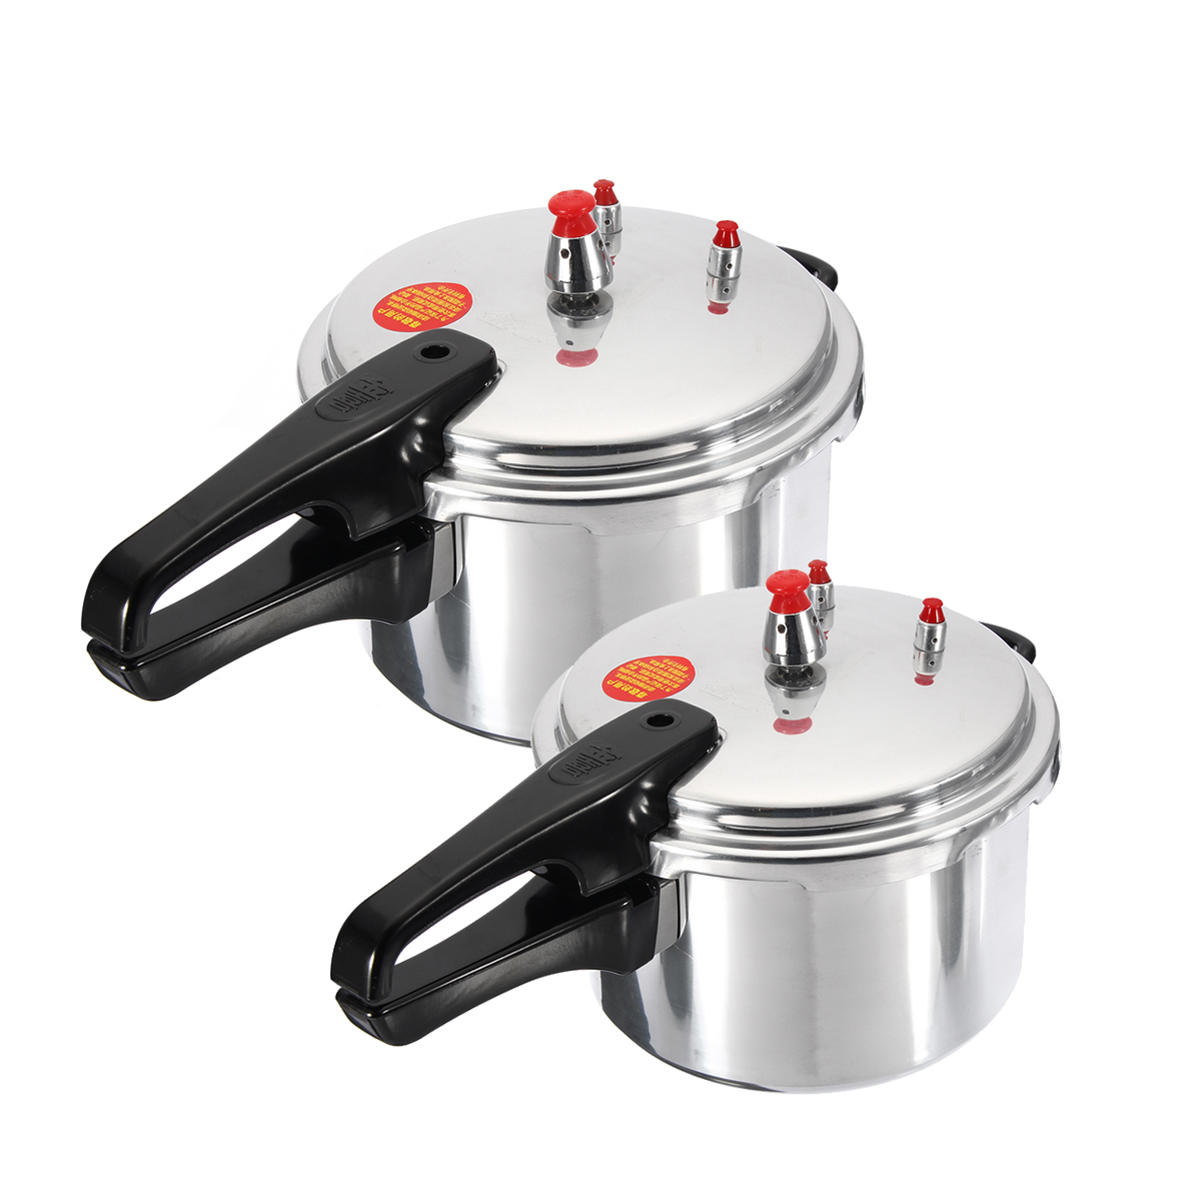 4l/7l aluminium alloy pressure cooker kitchen gas stove cooking pot